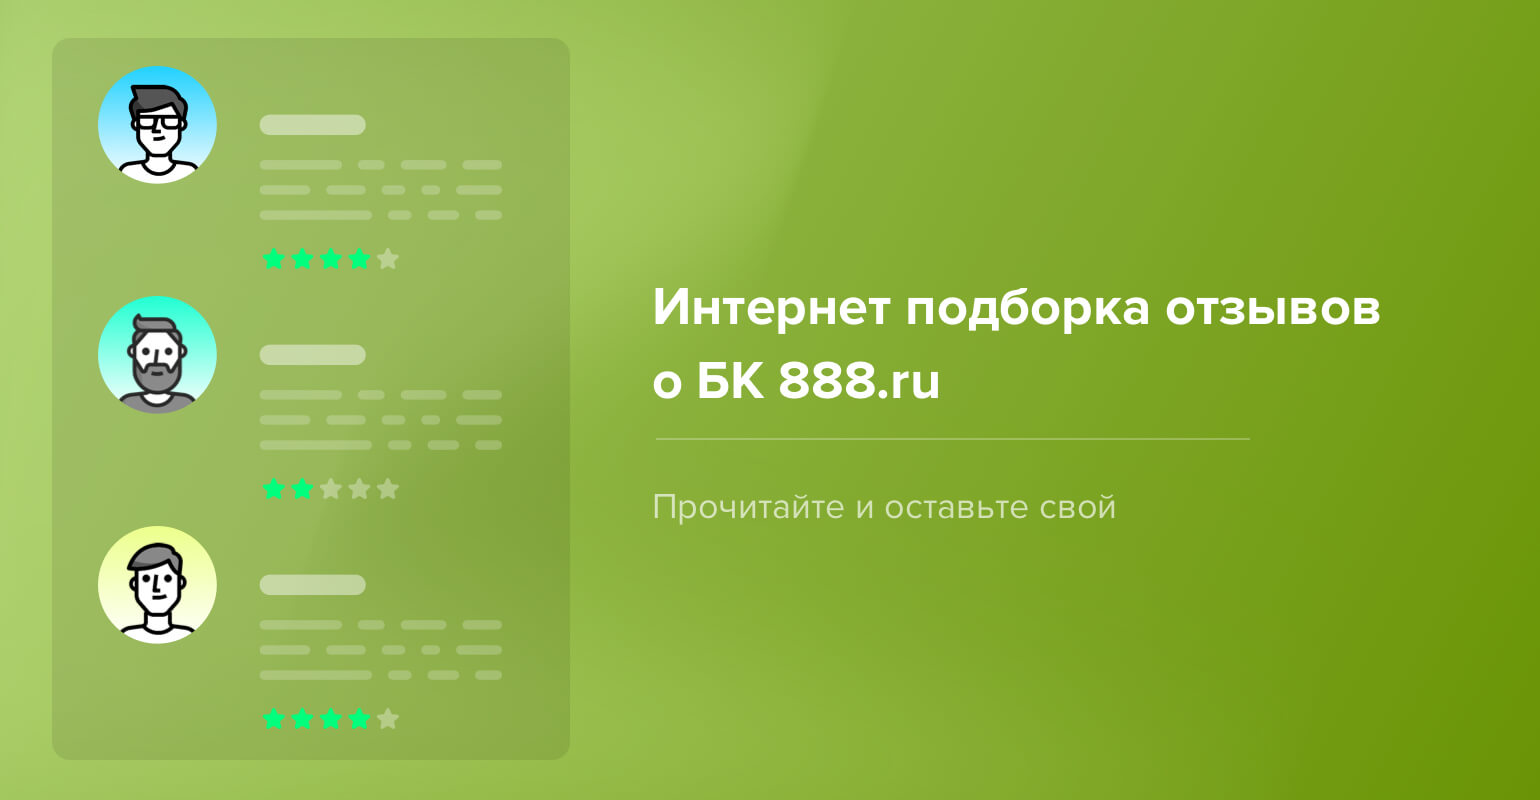 Бк 888 ru отзывы бесплатные ставки на спорт без депозита